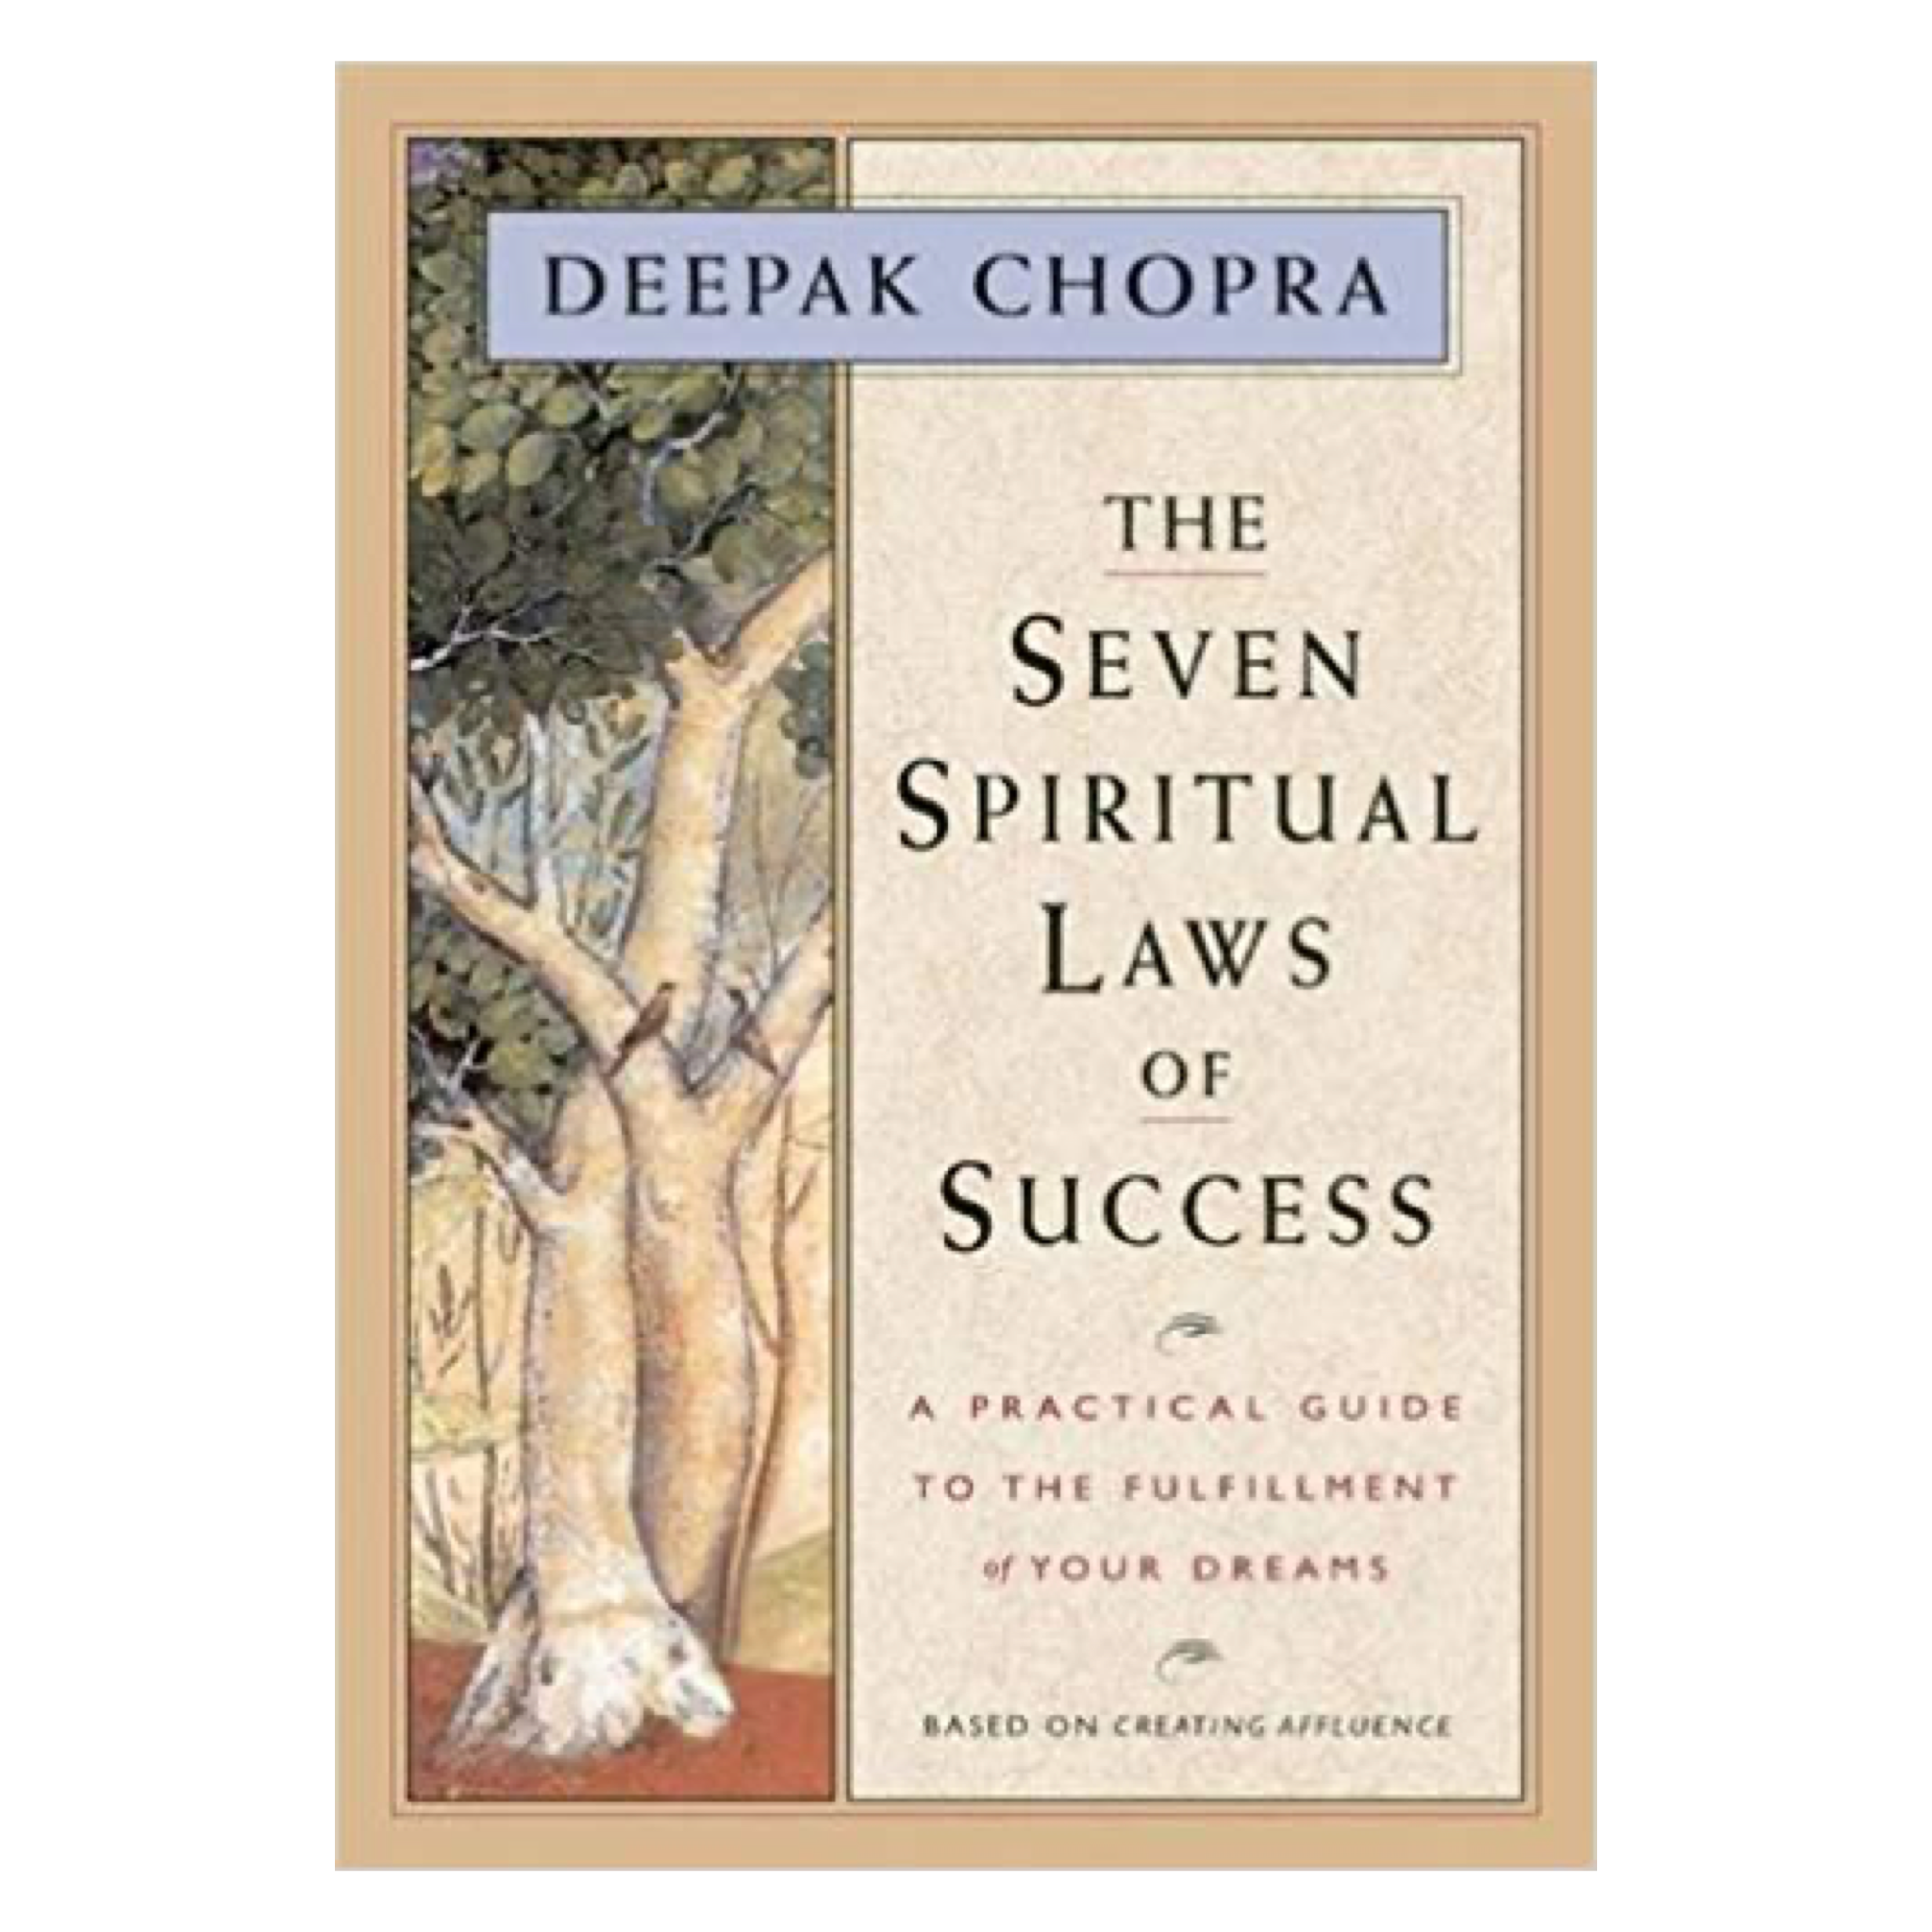 The Seven Spiritual Laws by Deepak Chopra